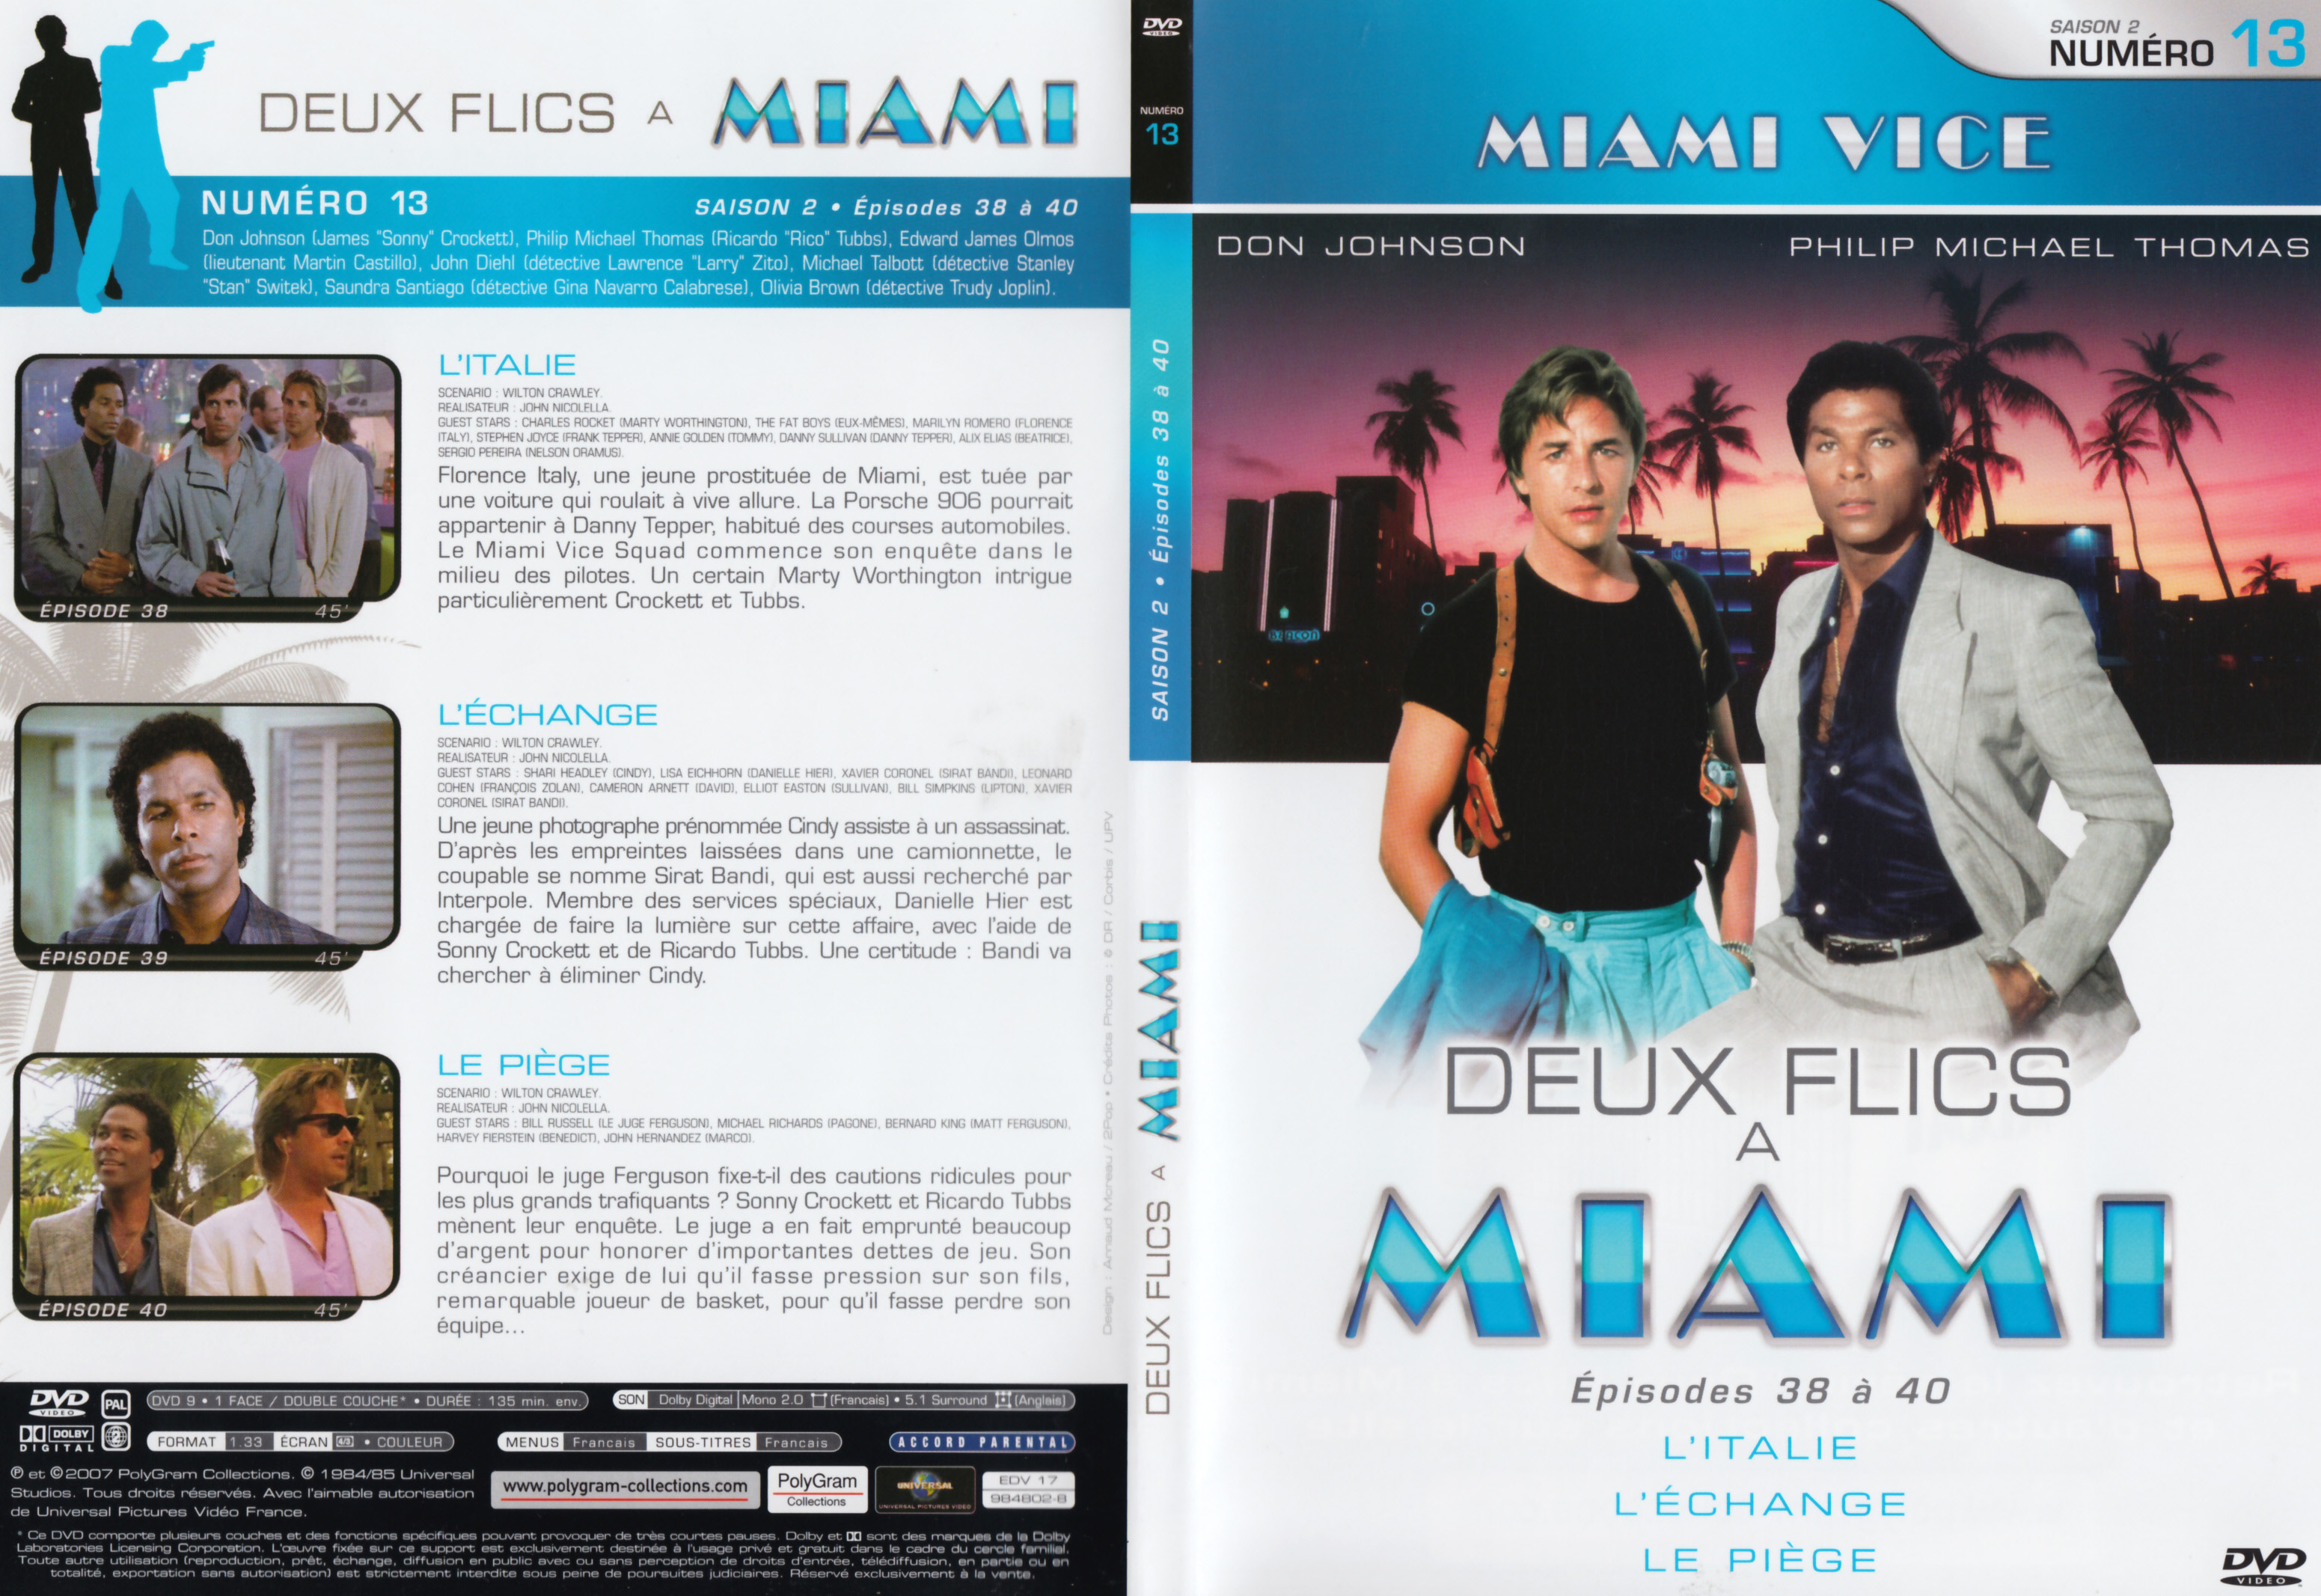 Jaquette DVD Deux flics  Miami Saison 2 vol 13